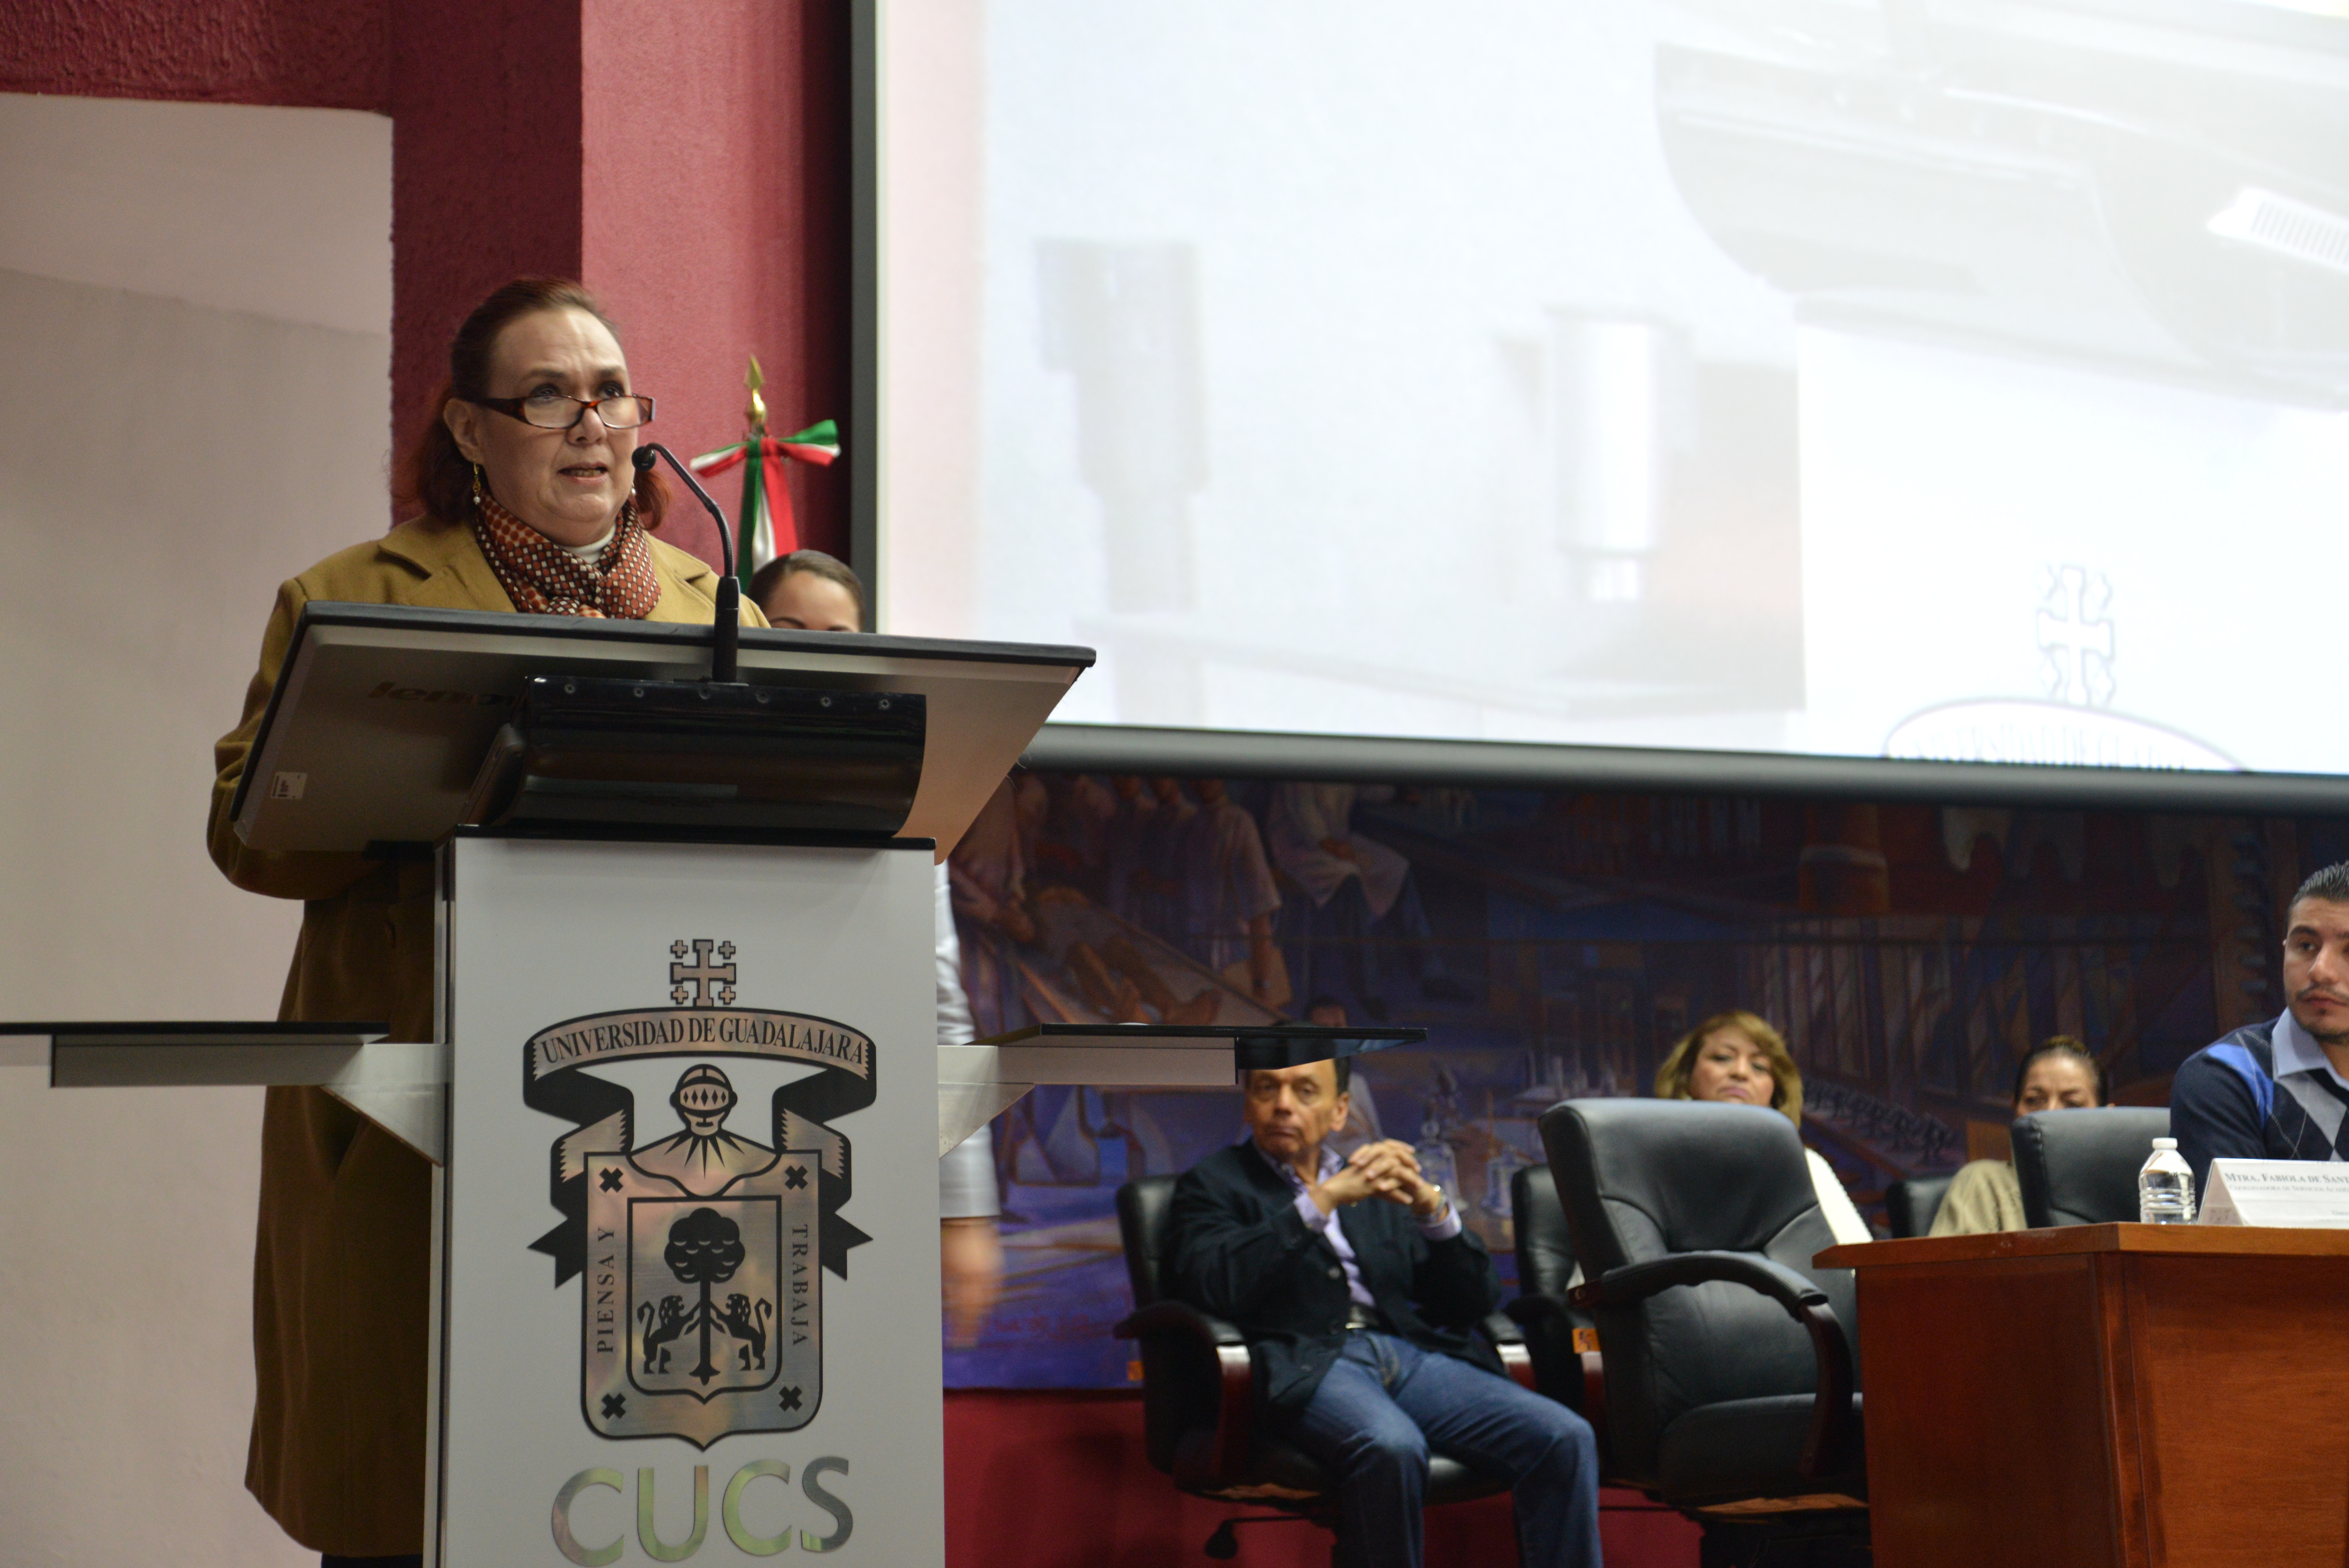 Mtra Fabiola de Santos, dando la bienvenida y presentando a los miembros del presiídium